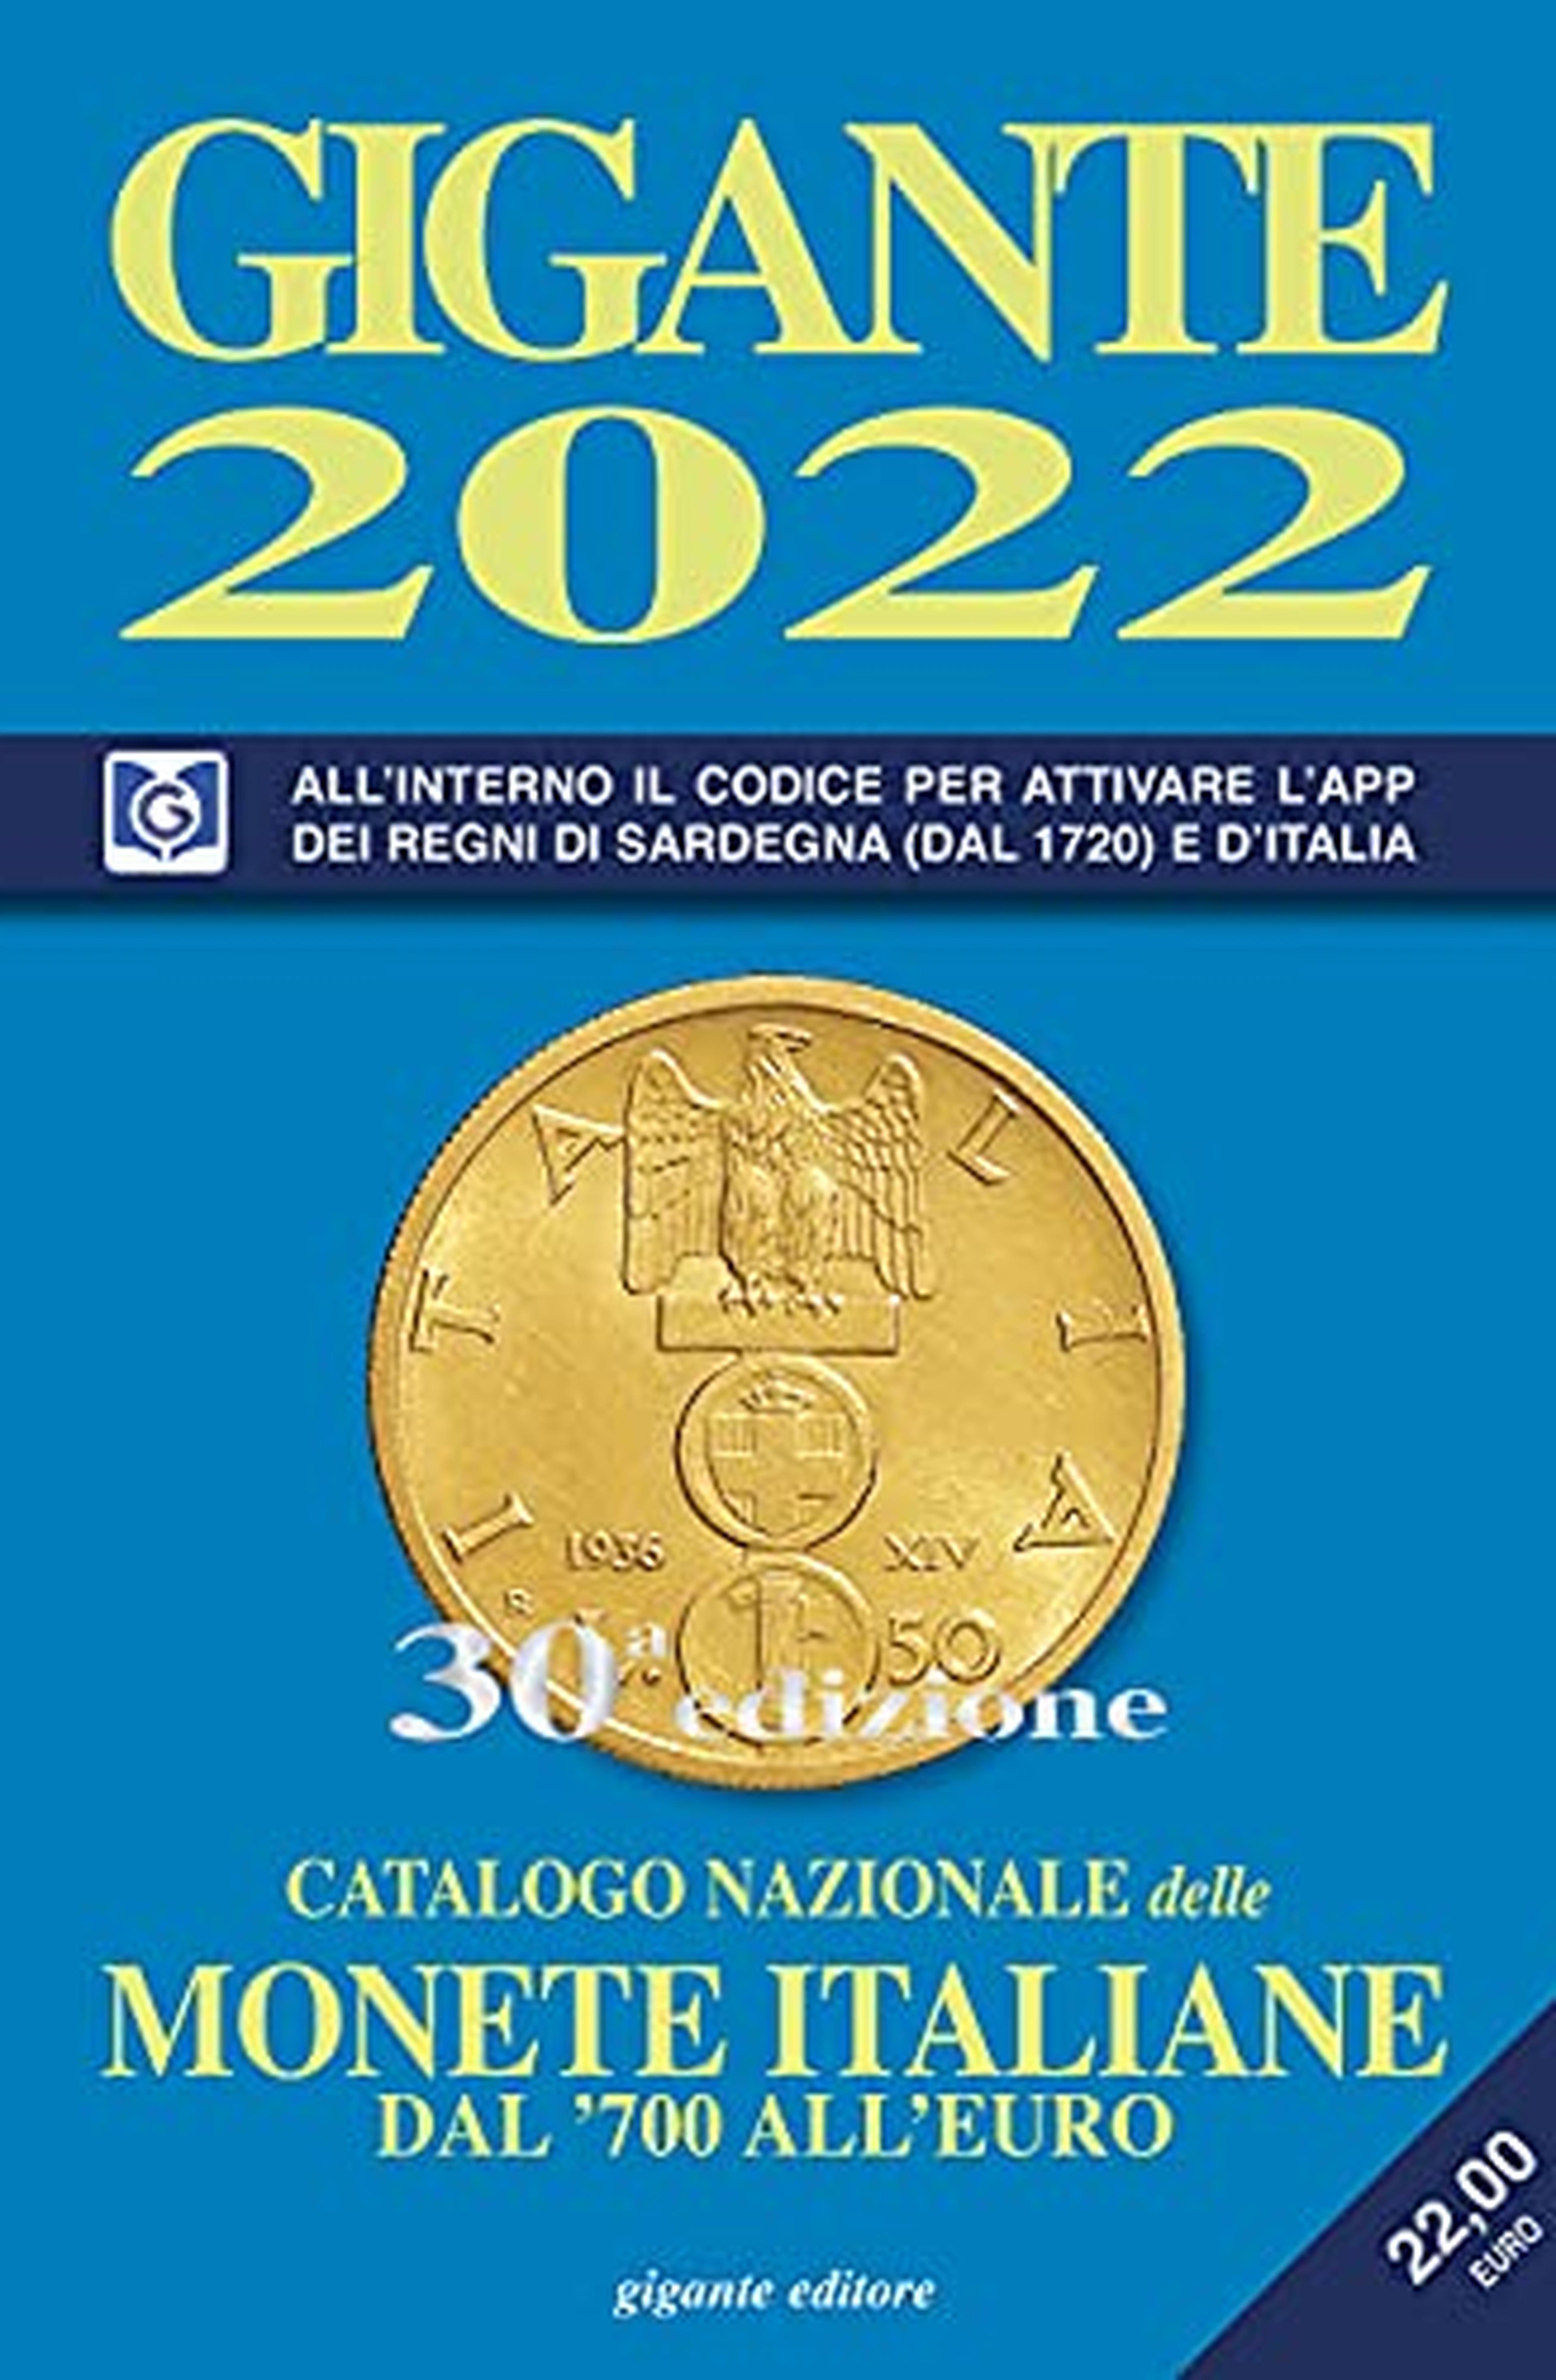 Gigante 2022. Catalogo nazionale delle monete italiane dal '700 all'euro